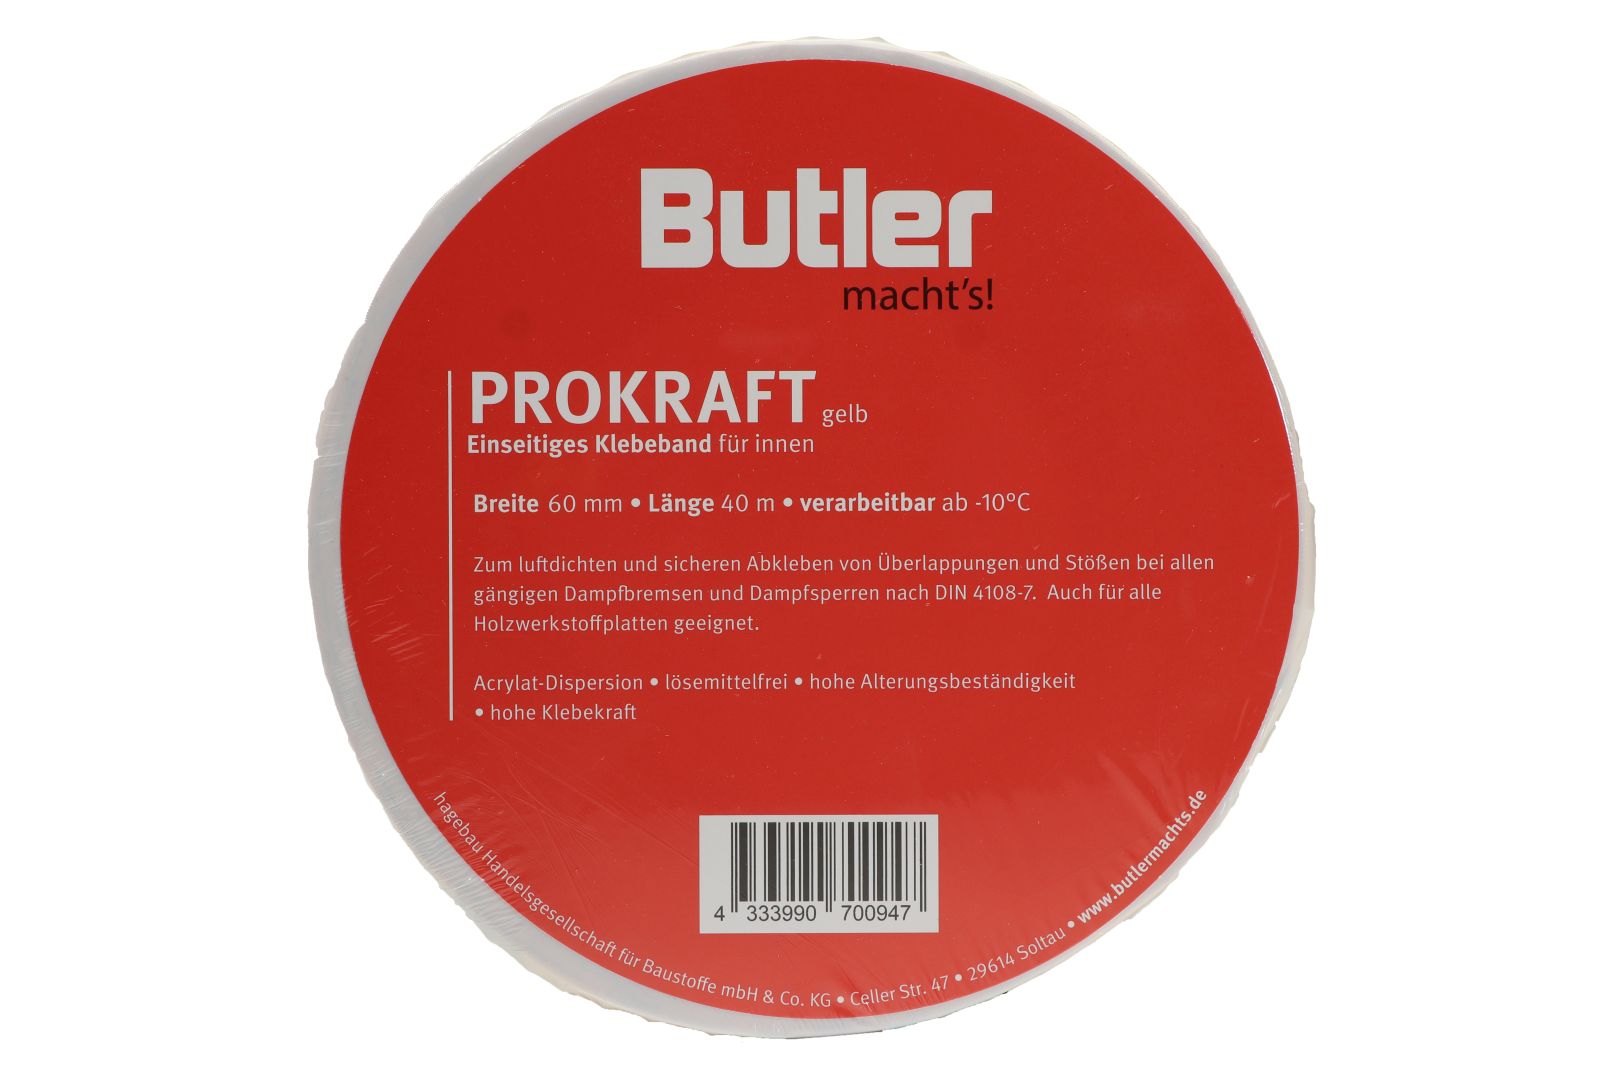 Butler macht's! ProKraft Klebeband für innen, für Dampfbremsen und Dampfsperren, einseitig selbstklebend, gelb, 40 m x 60 mm